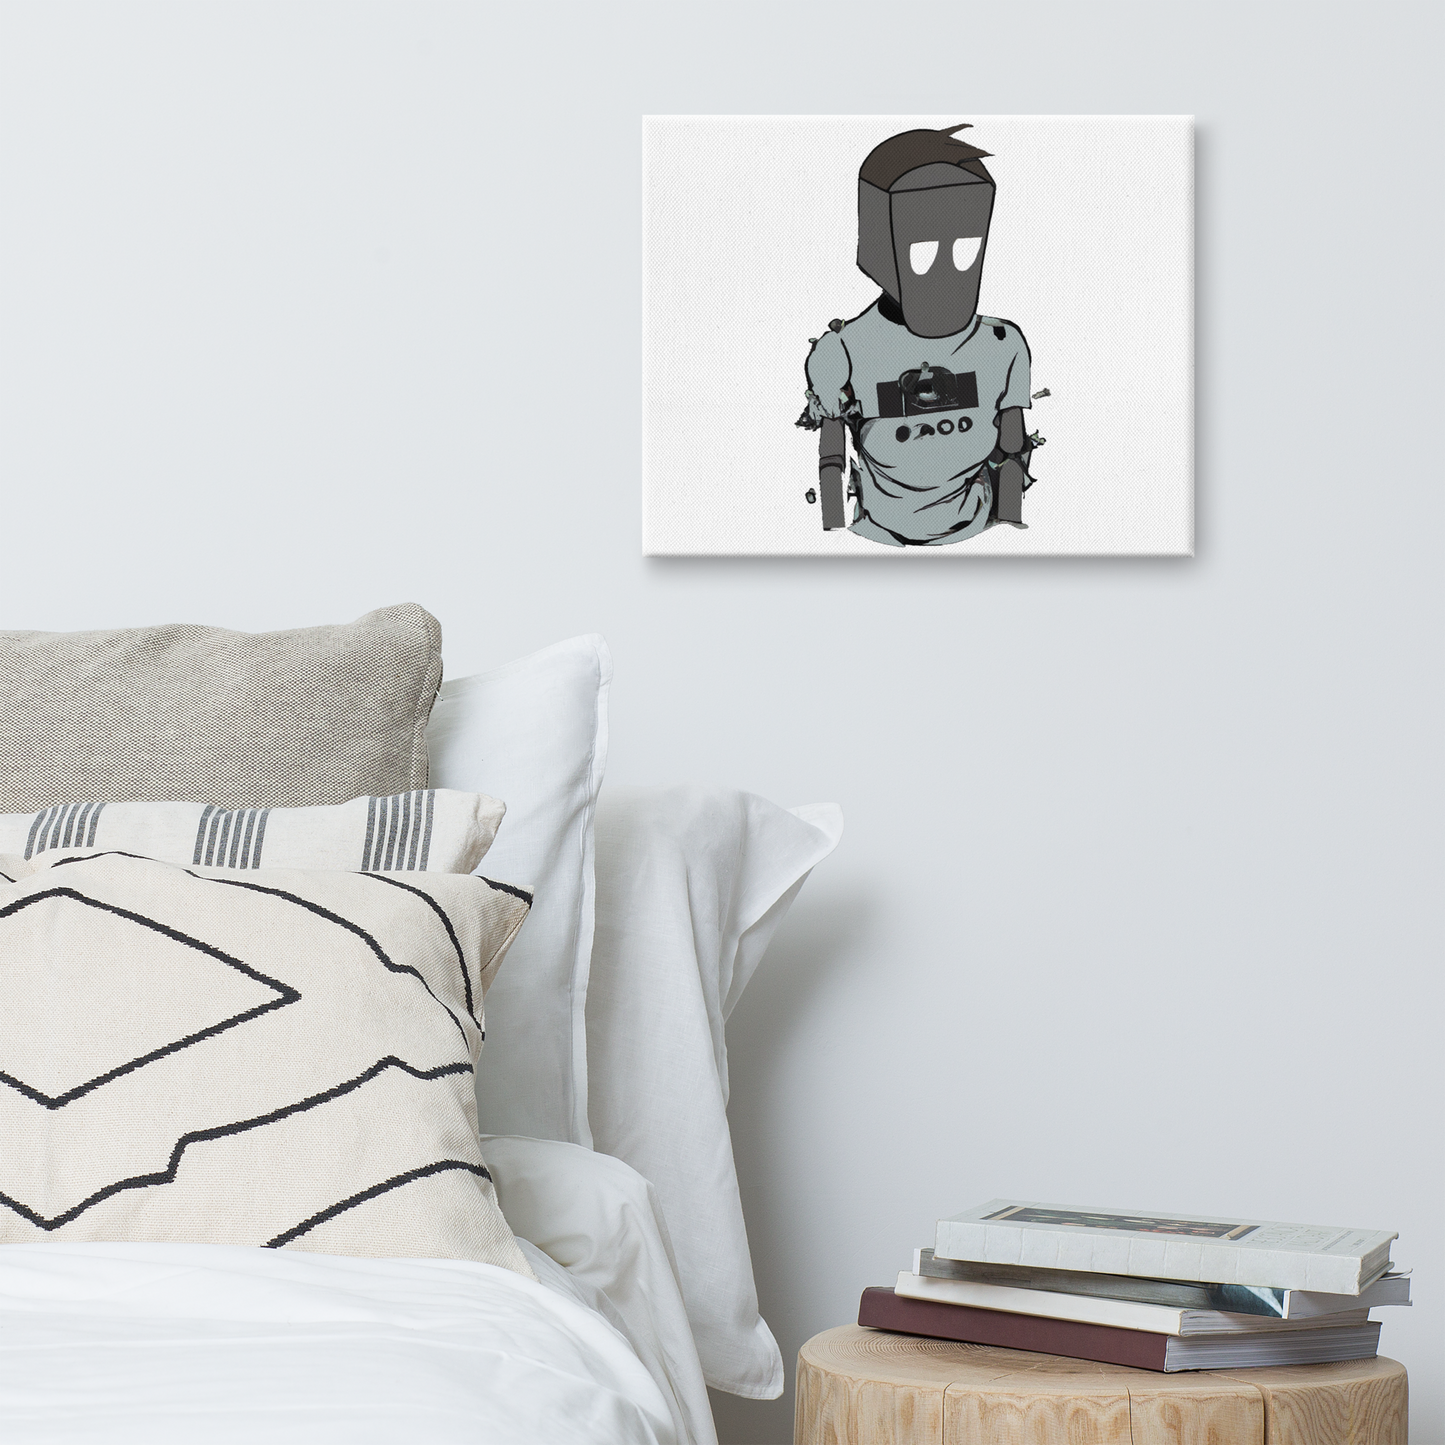 SOULED OUT "Sad Robot 2" Canvas